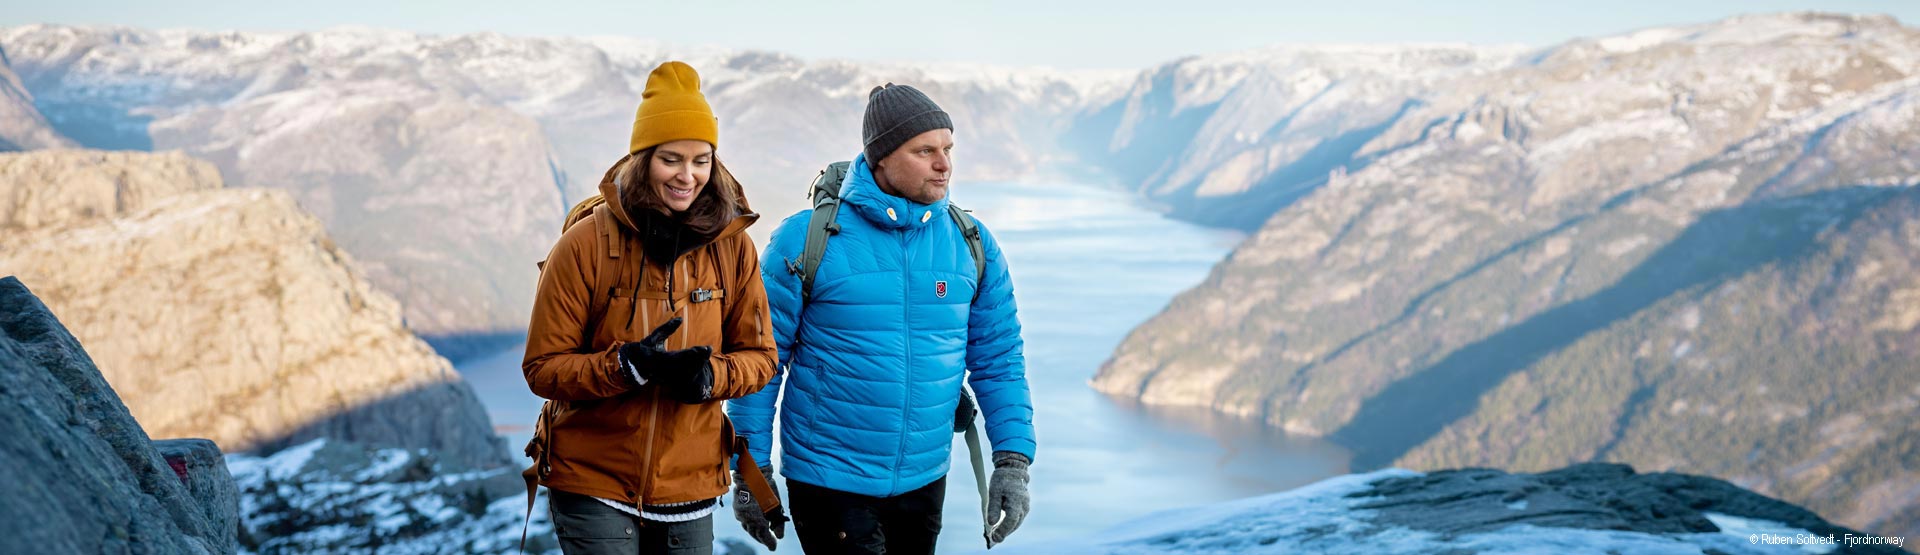 Norwegen Winterurlaub: Ski-, Polarlichter- und Rund-Reisen